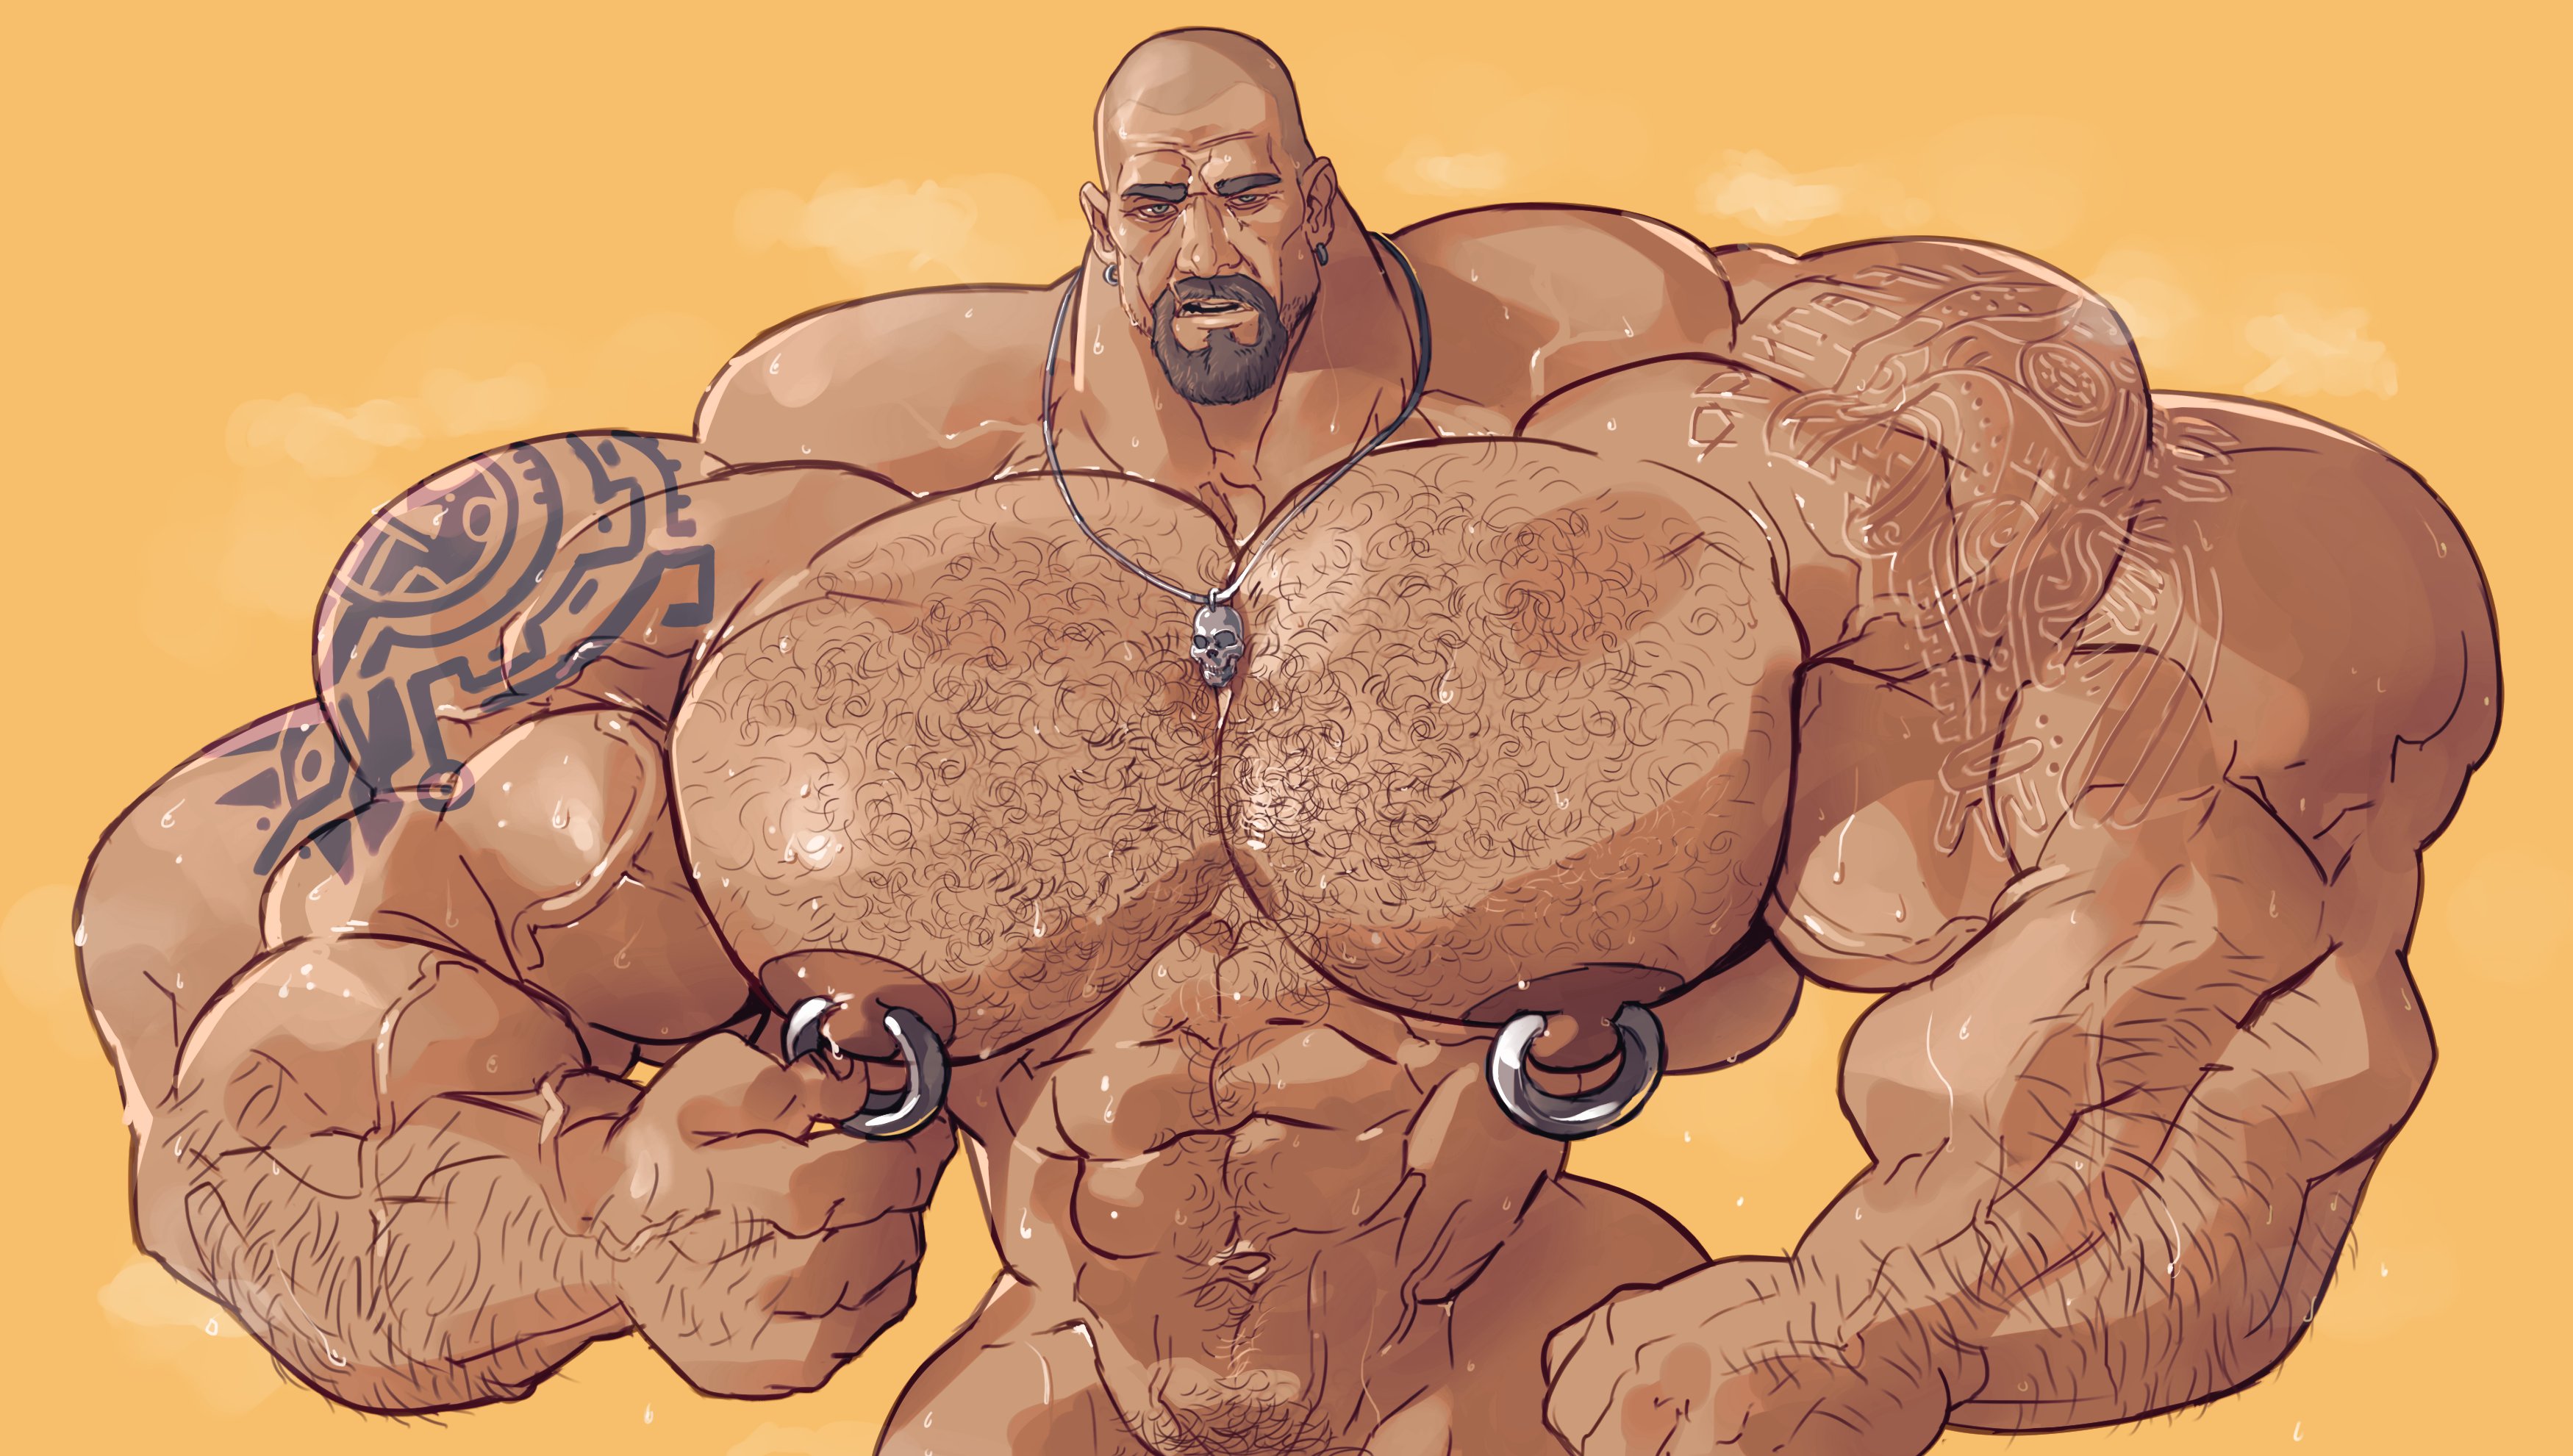 Muscle bears threesome titan sagat